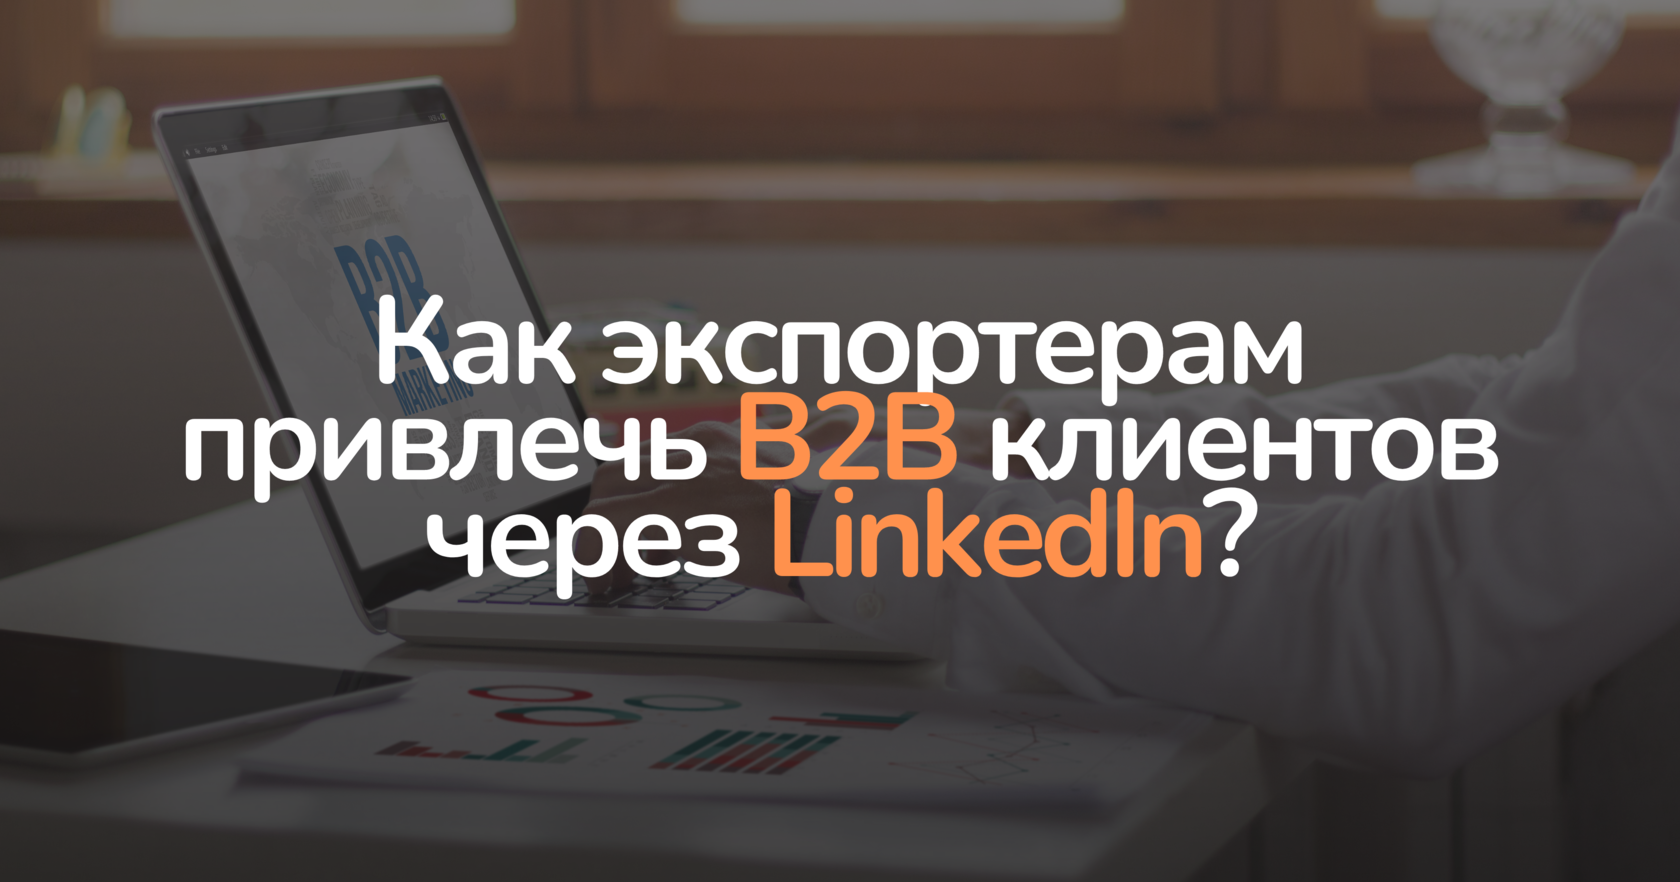 Как экспортерам привлечь B2B клиентов через LinkedIn?